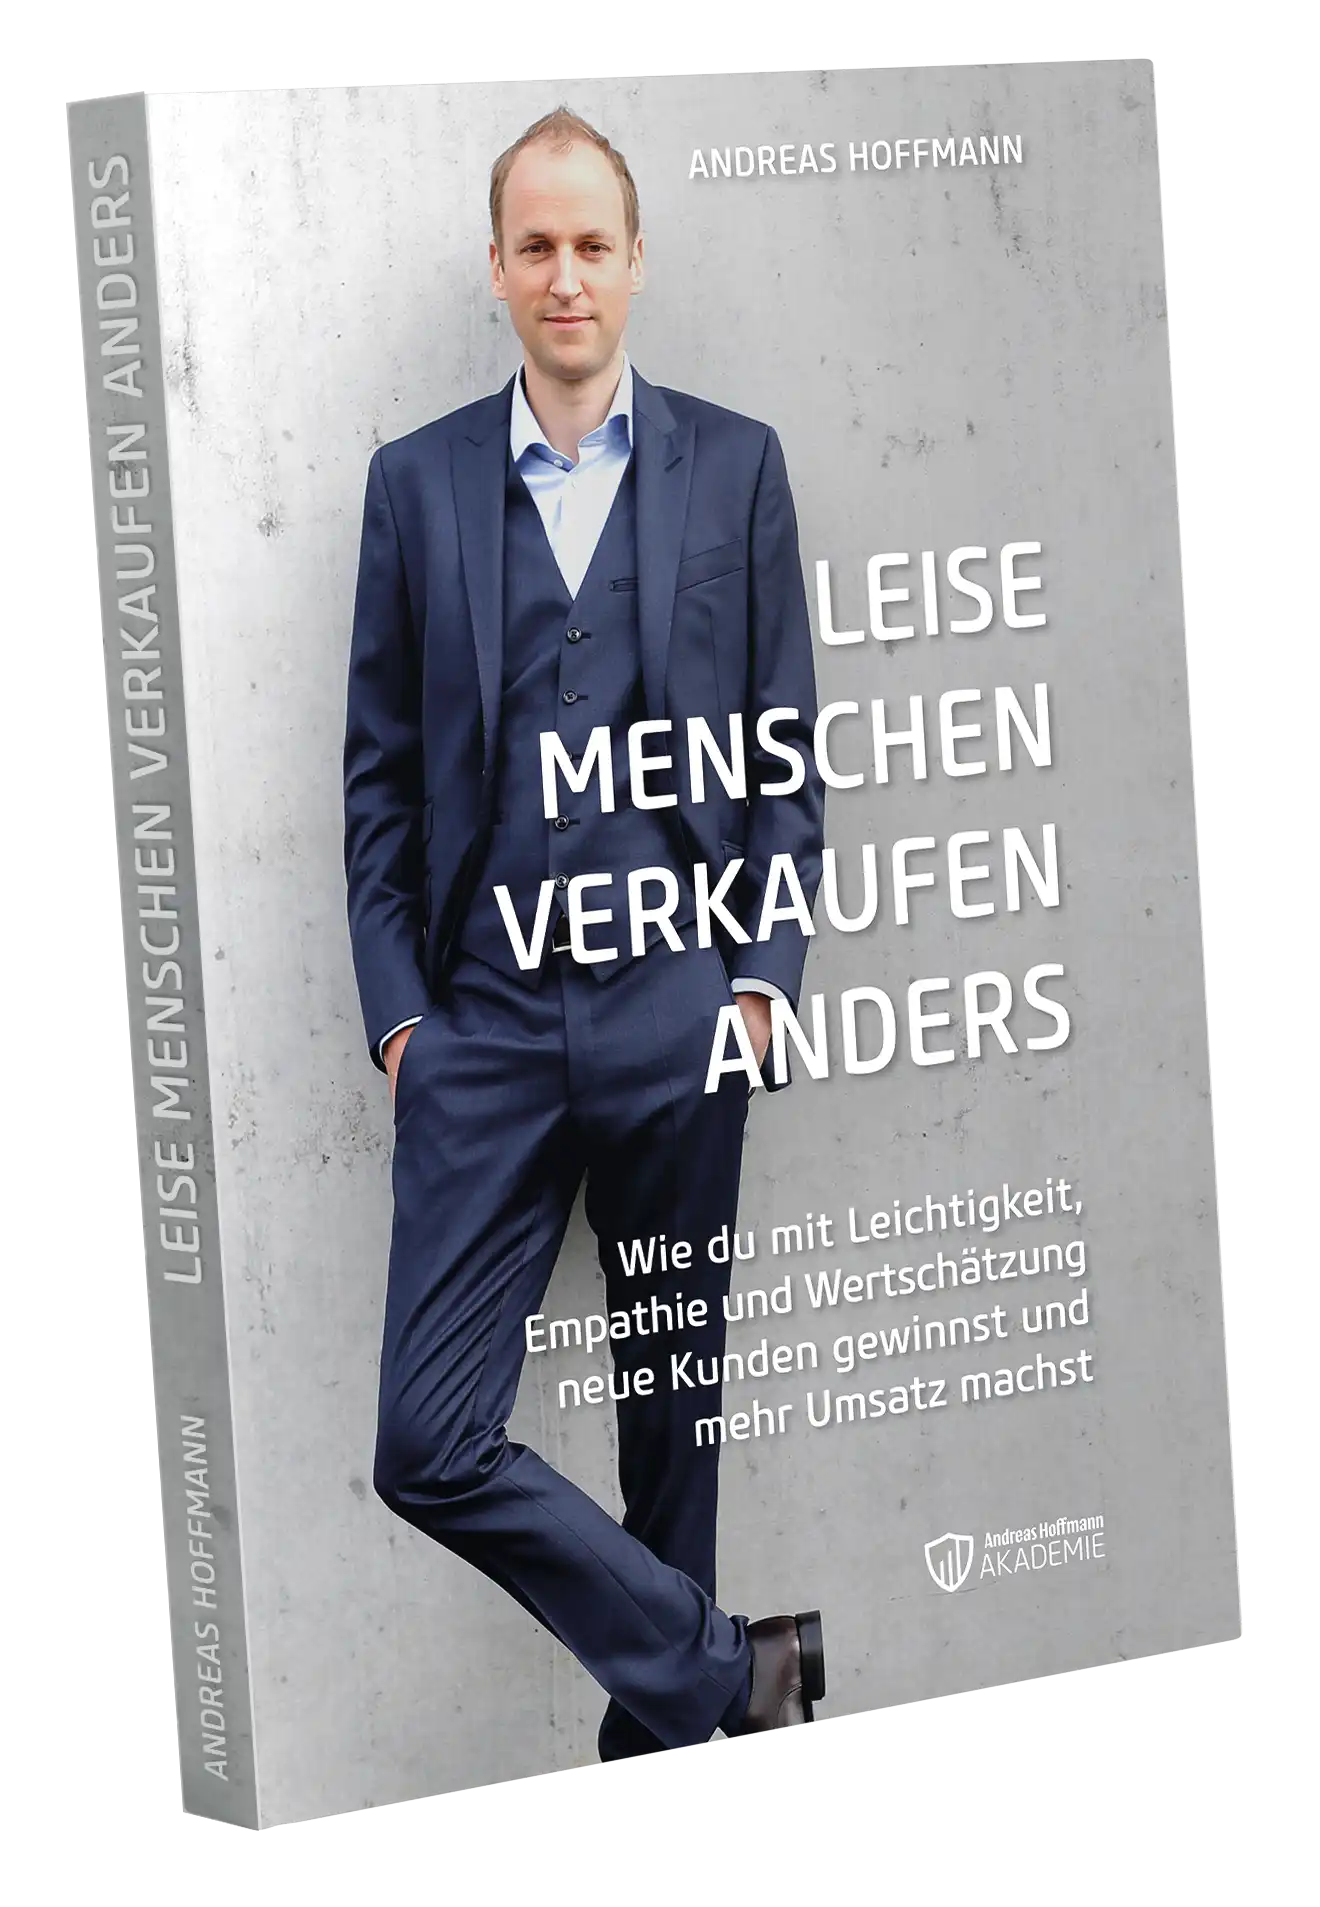 Andreas Hoffmann Akademie Buch Leiese Menschen verkaufen anders